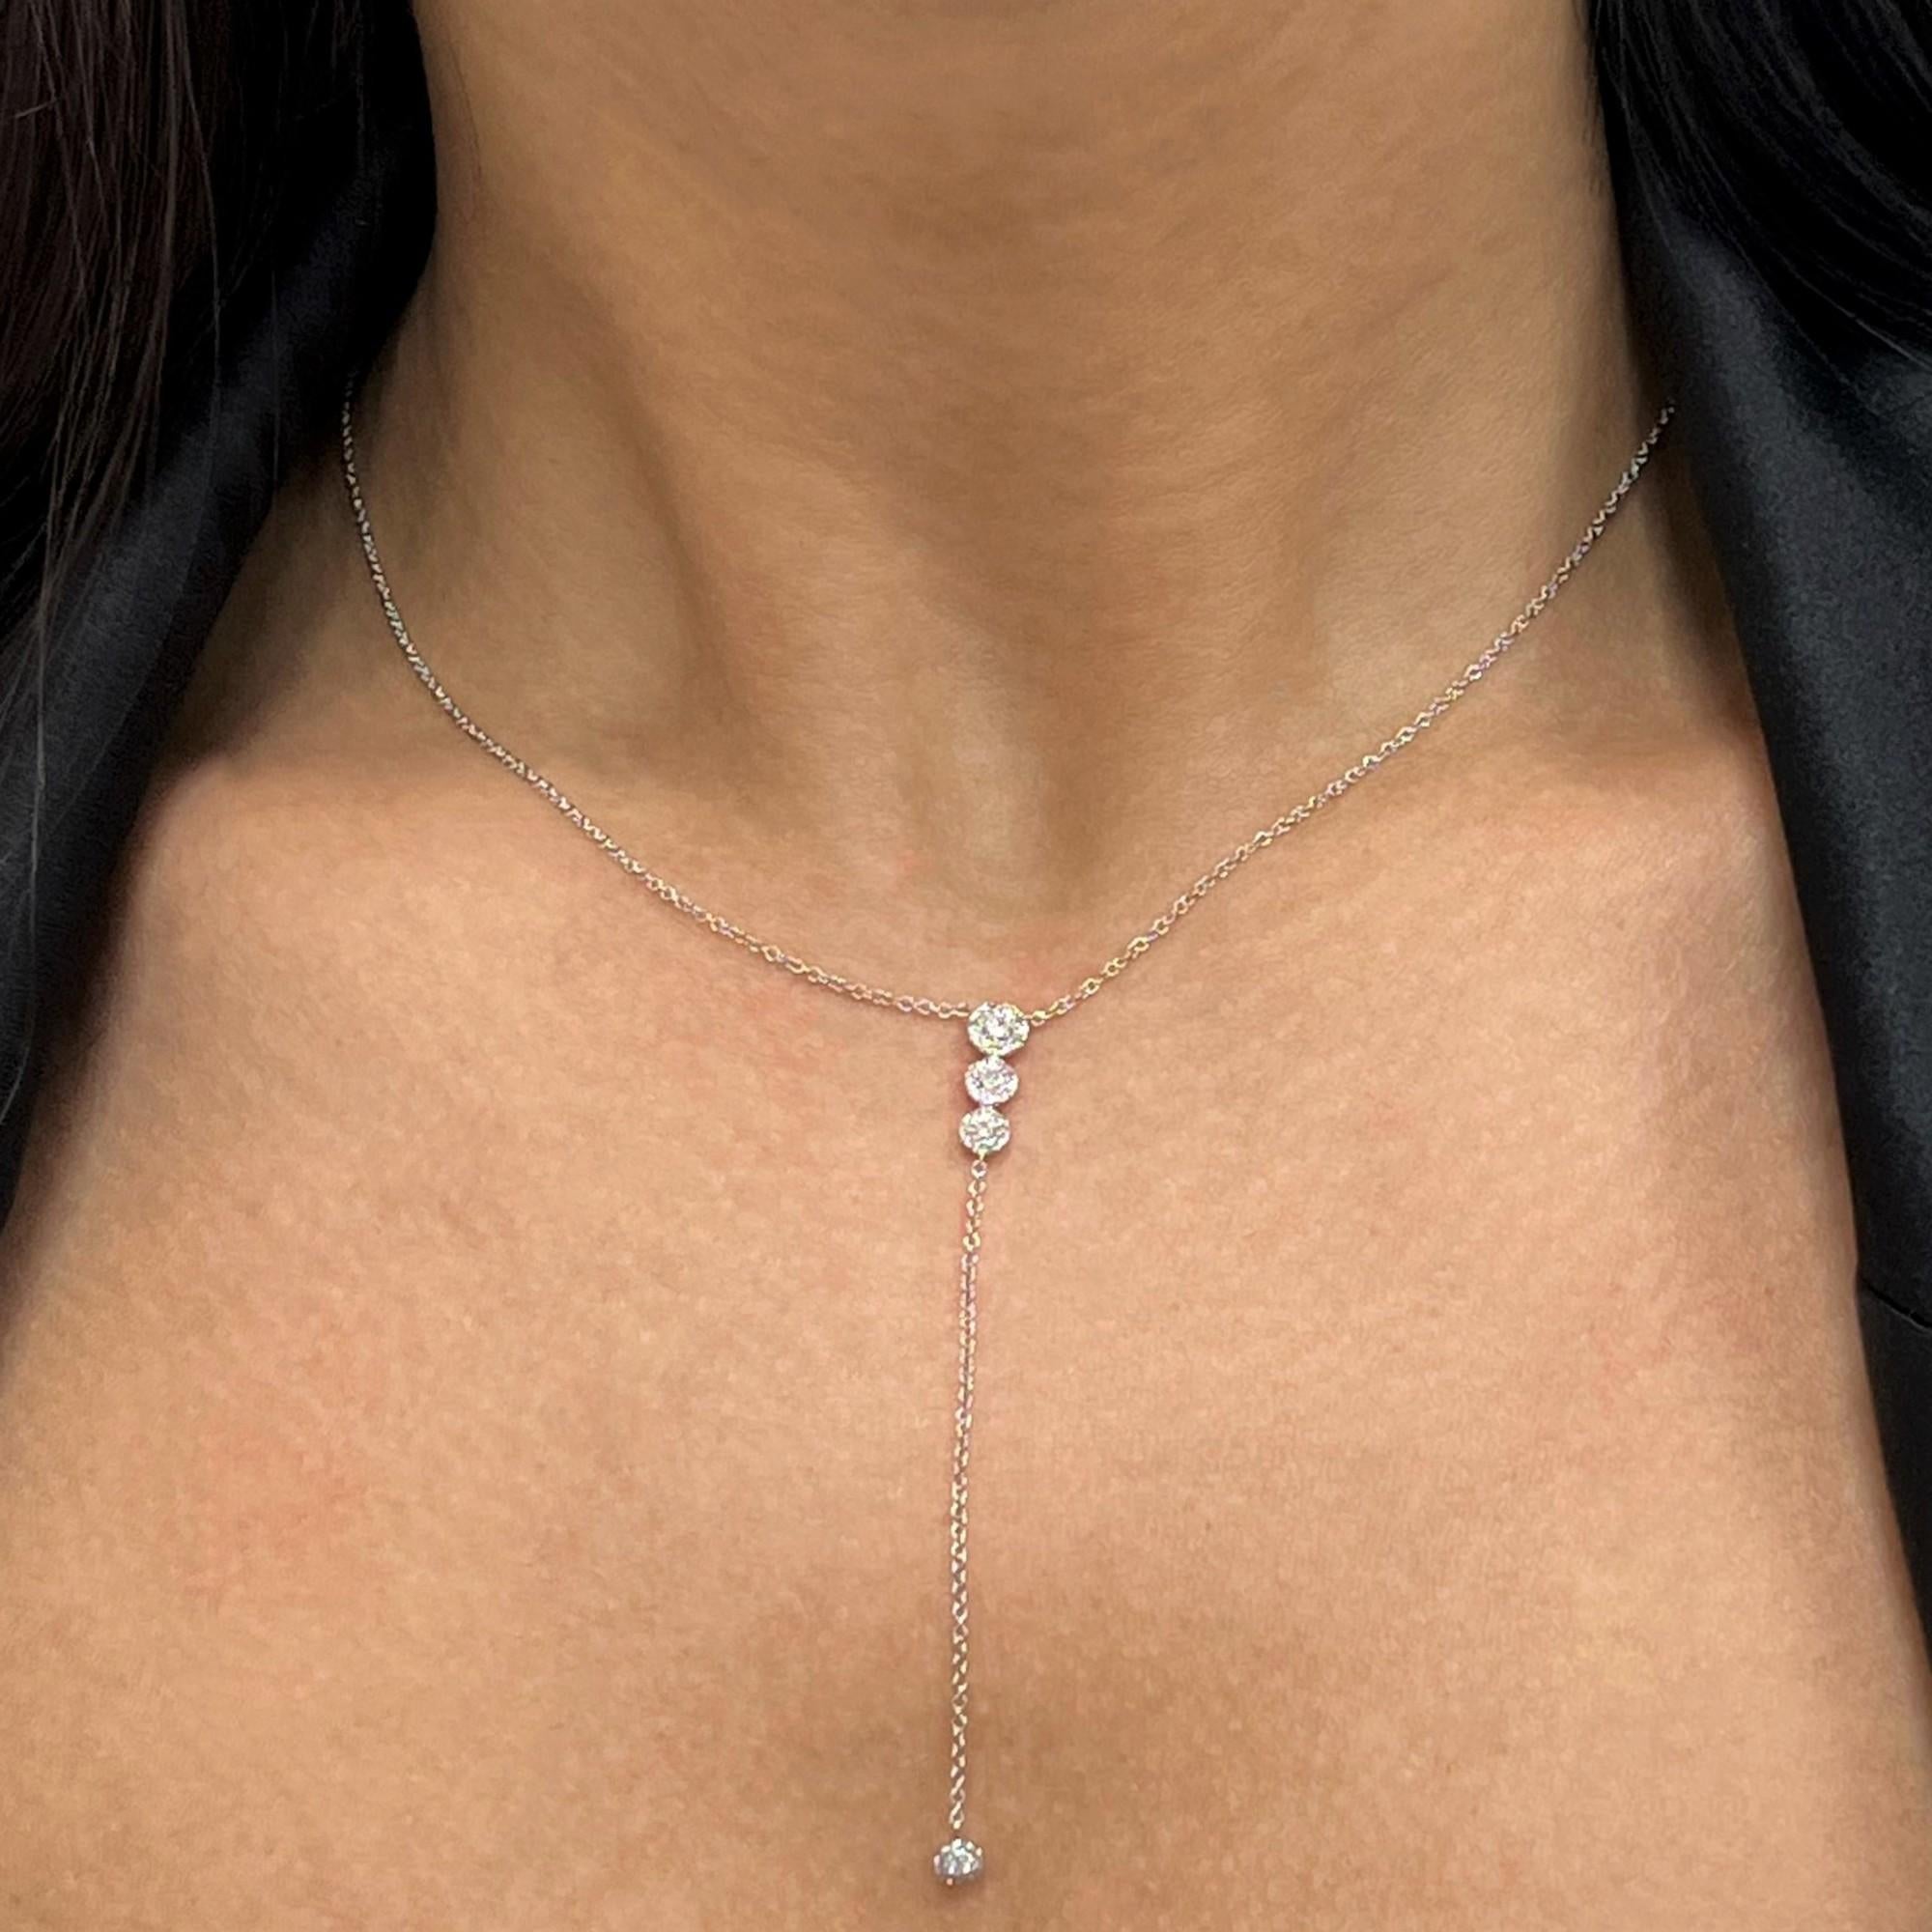 Rachel Koen Diamond Composite Lariat Necklace 14k White Gold 0.29cttw For Sale 1